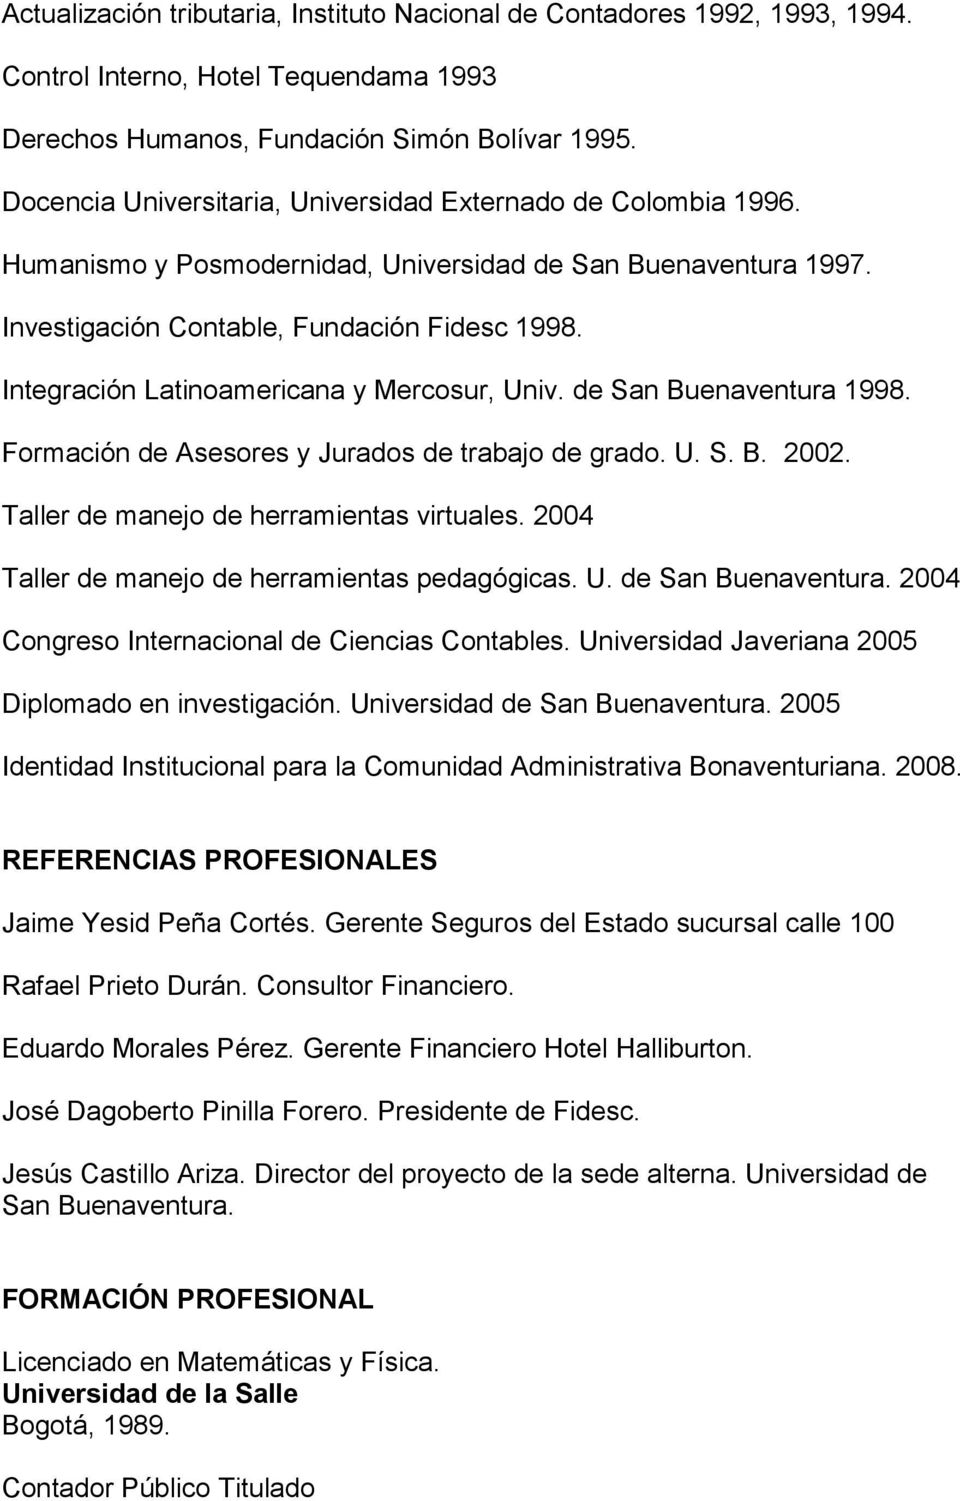 Integración Latinoamericana y Mercosur, Univ. de San Buenaventura 1998. Formación de Asesores y Jurados de trabajo de grado. U. S. B. 2002. Taller de manejo de herramientas virtuales.